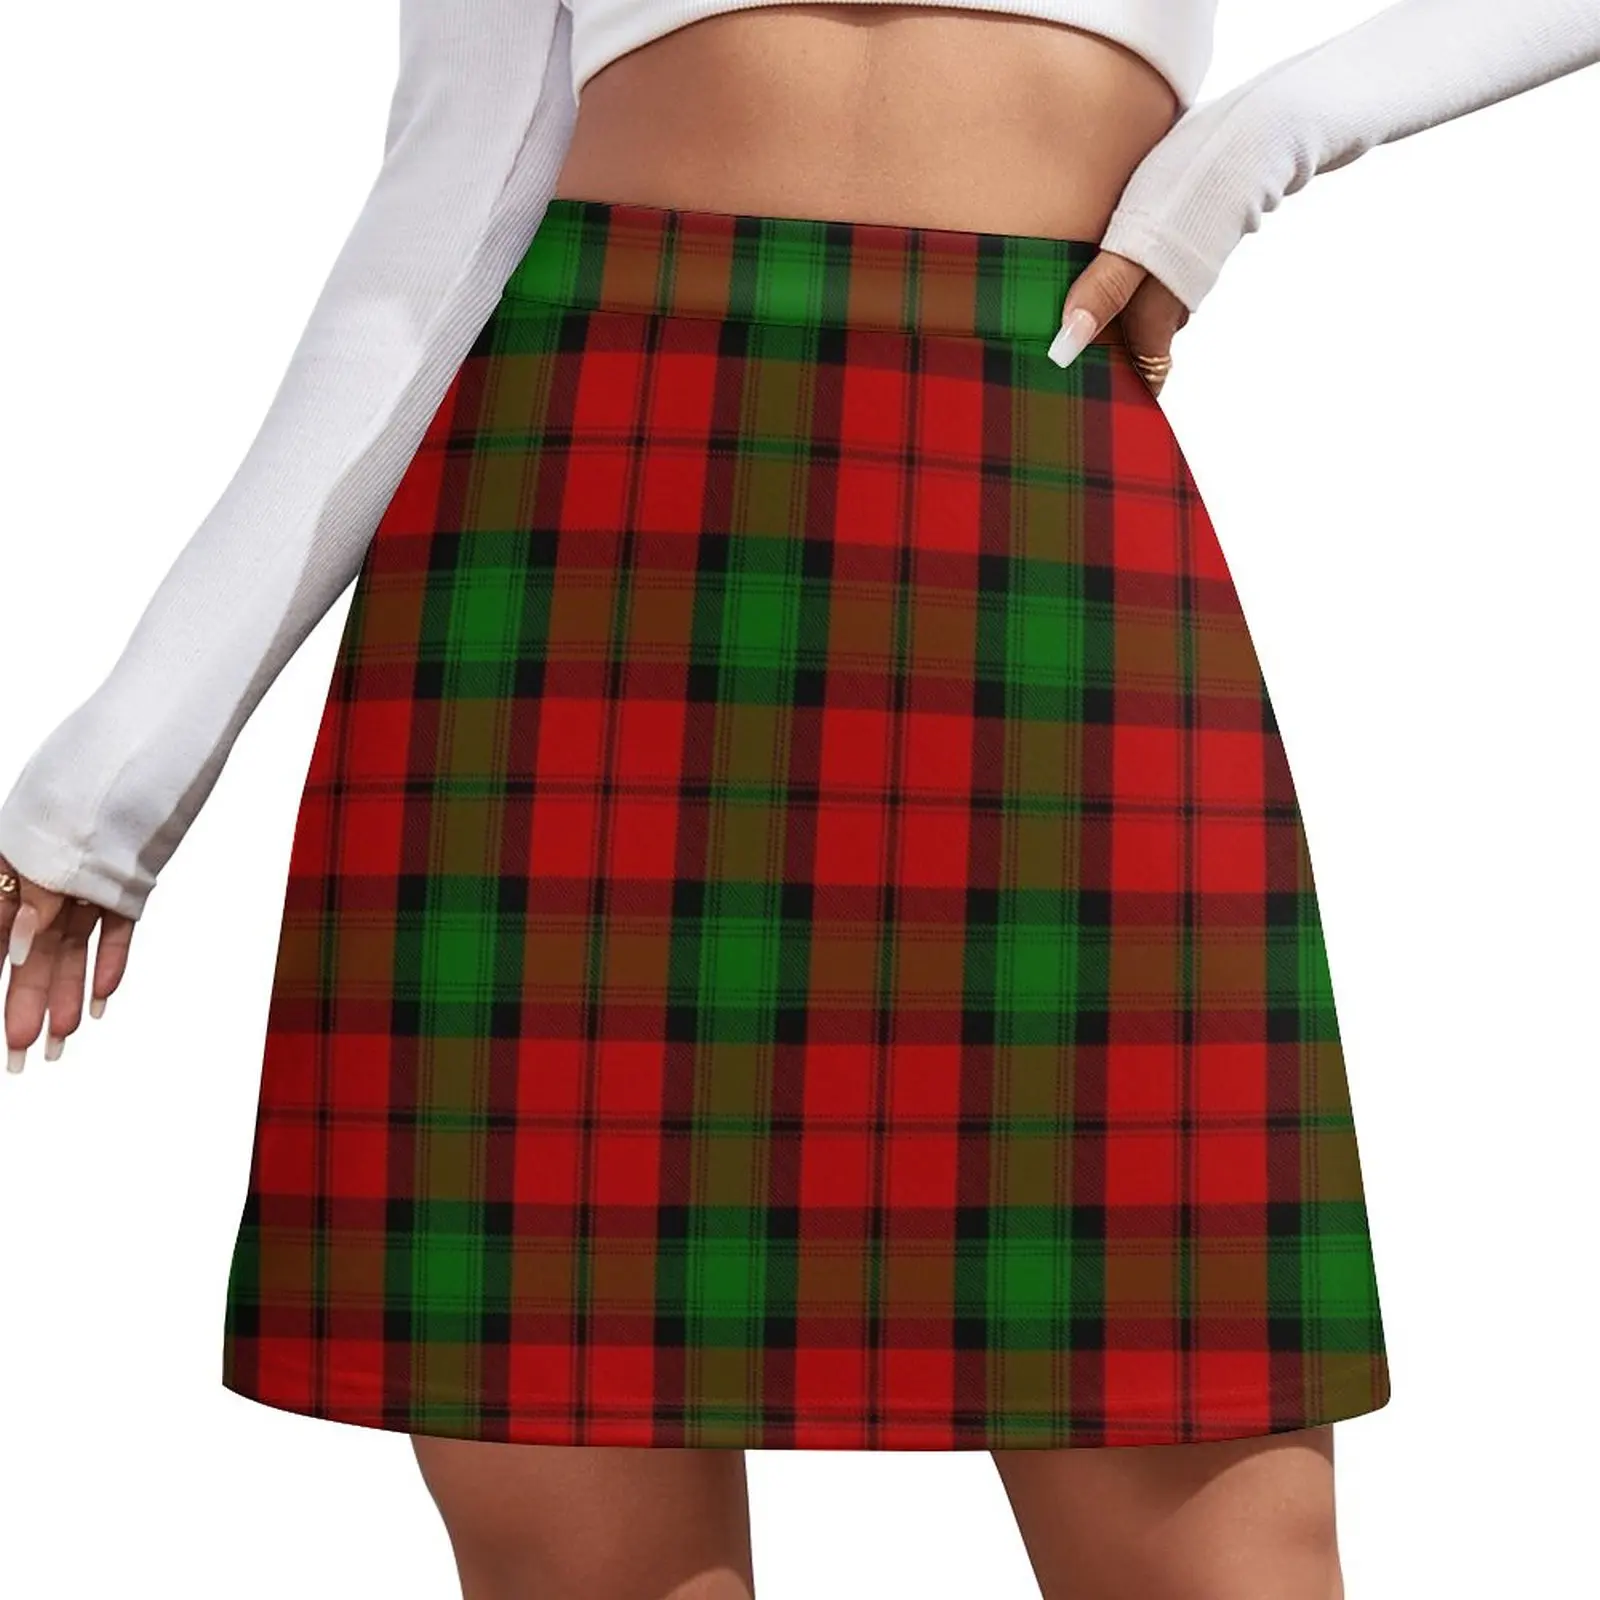 Kerr Clan Tartan Mini Skirt skirts dress Female skirt skorts for women